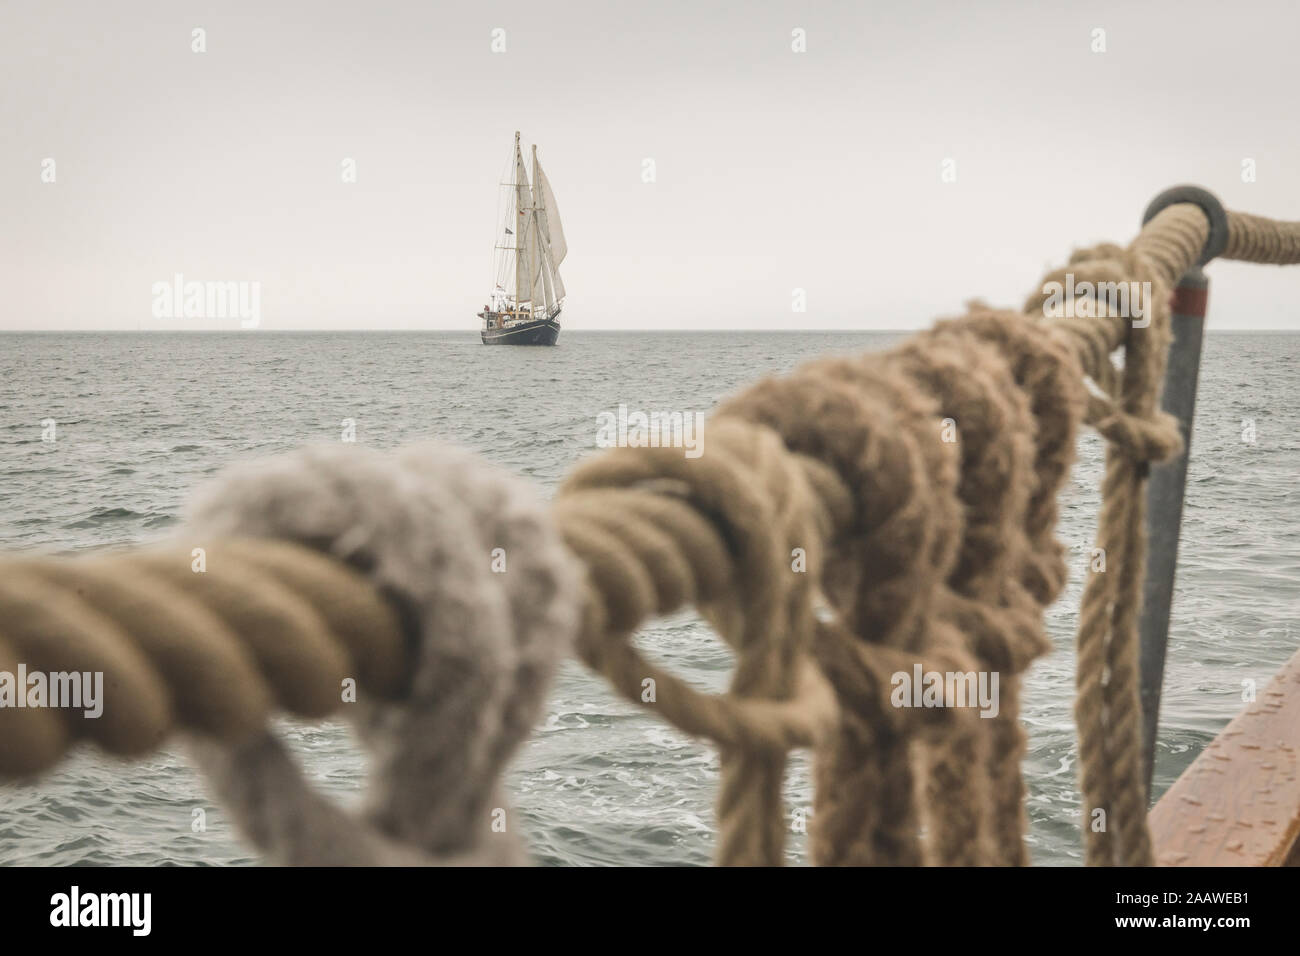 Dänemark, Ostsee, traditionelles Segelschiff von Gulet Deck gesehen Stockfoto